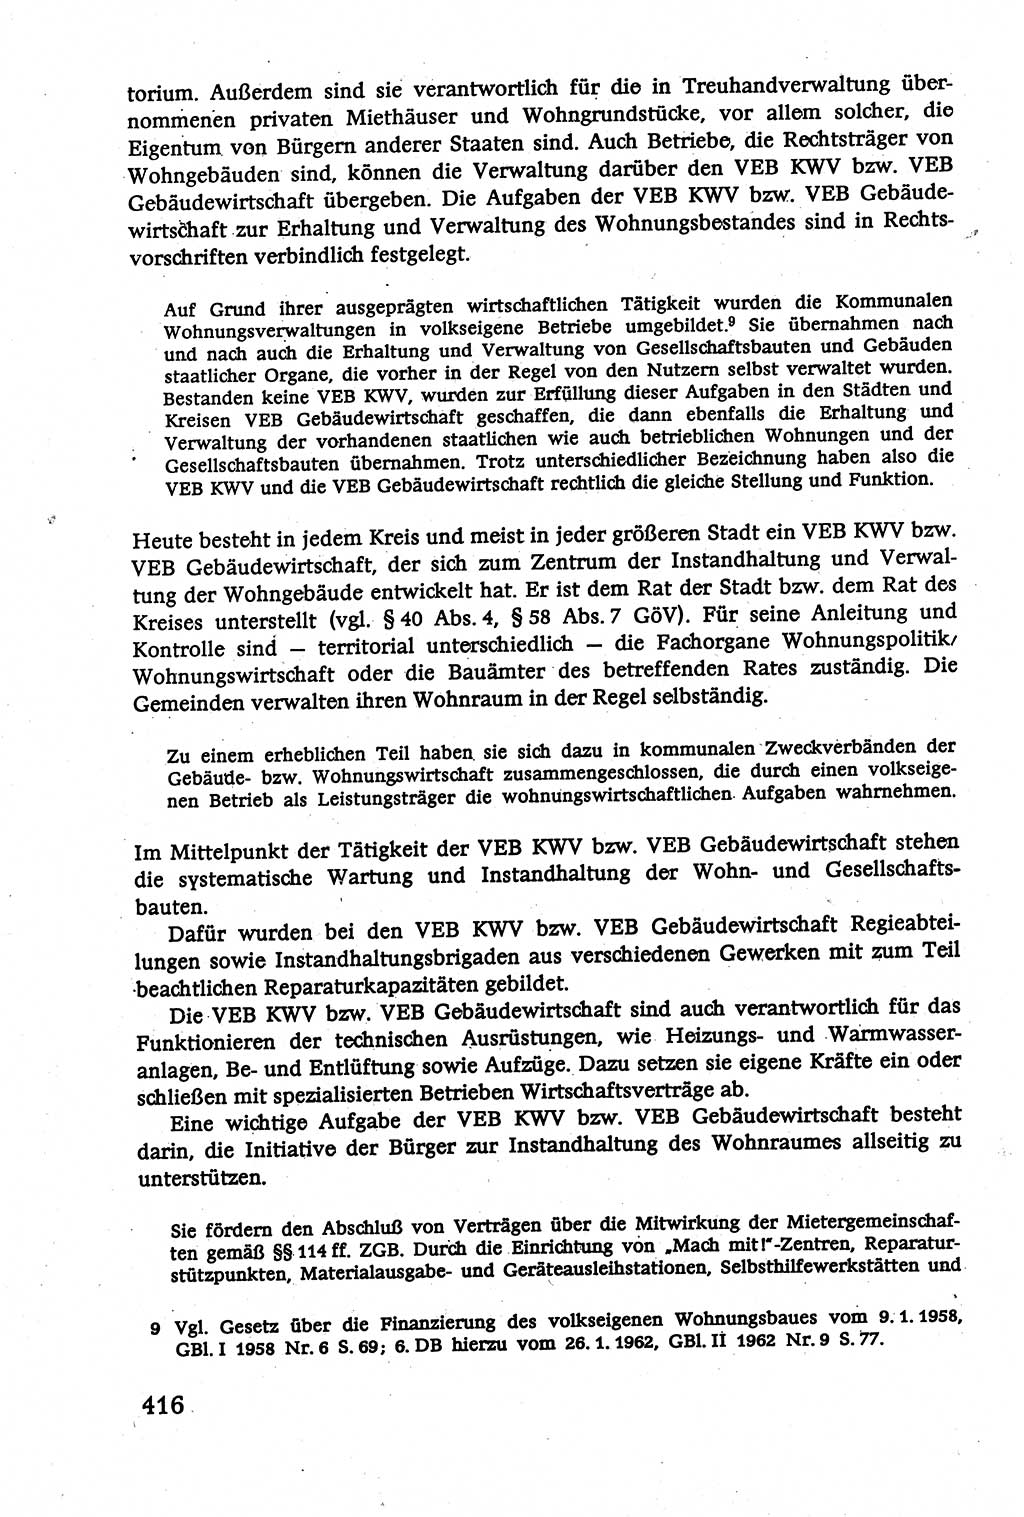 Verwaltungsrecht [Deutsche Demokratische Republik (DDR)], Lehrbuch 1979, Seite 416 (Verw.-R. DDR Lb. 1979, S. 416)